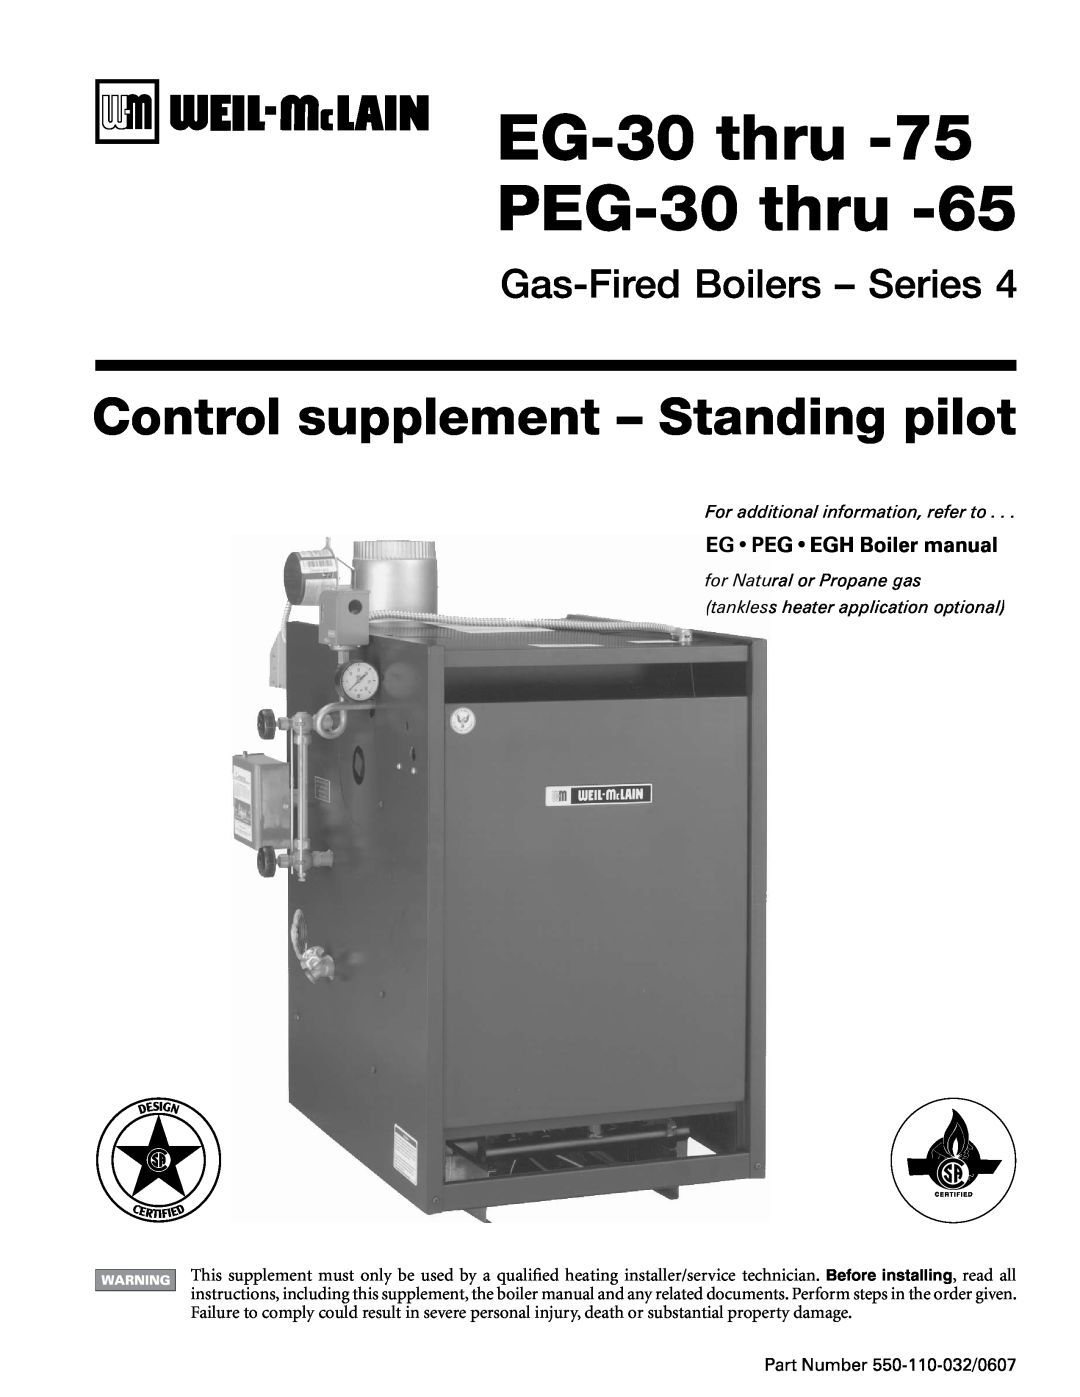 Weil-McLain EG-30 THRU -75 manual EGPEGEGH Boiler manual, EG-30thru PEG-30thru, Control supplement - Standing pilot 